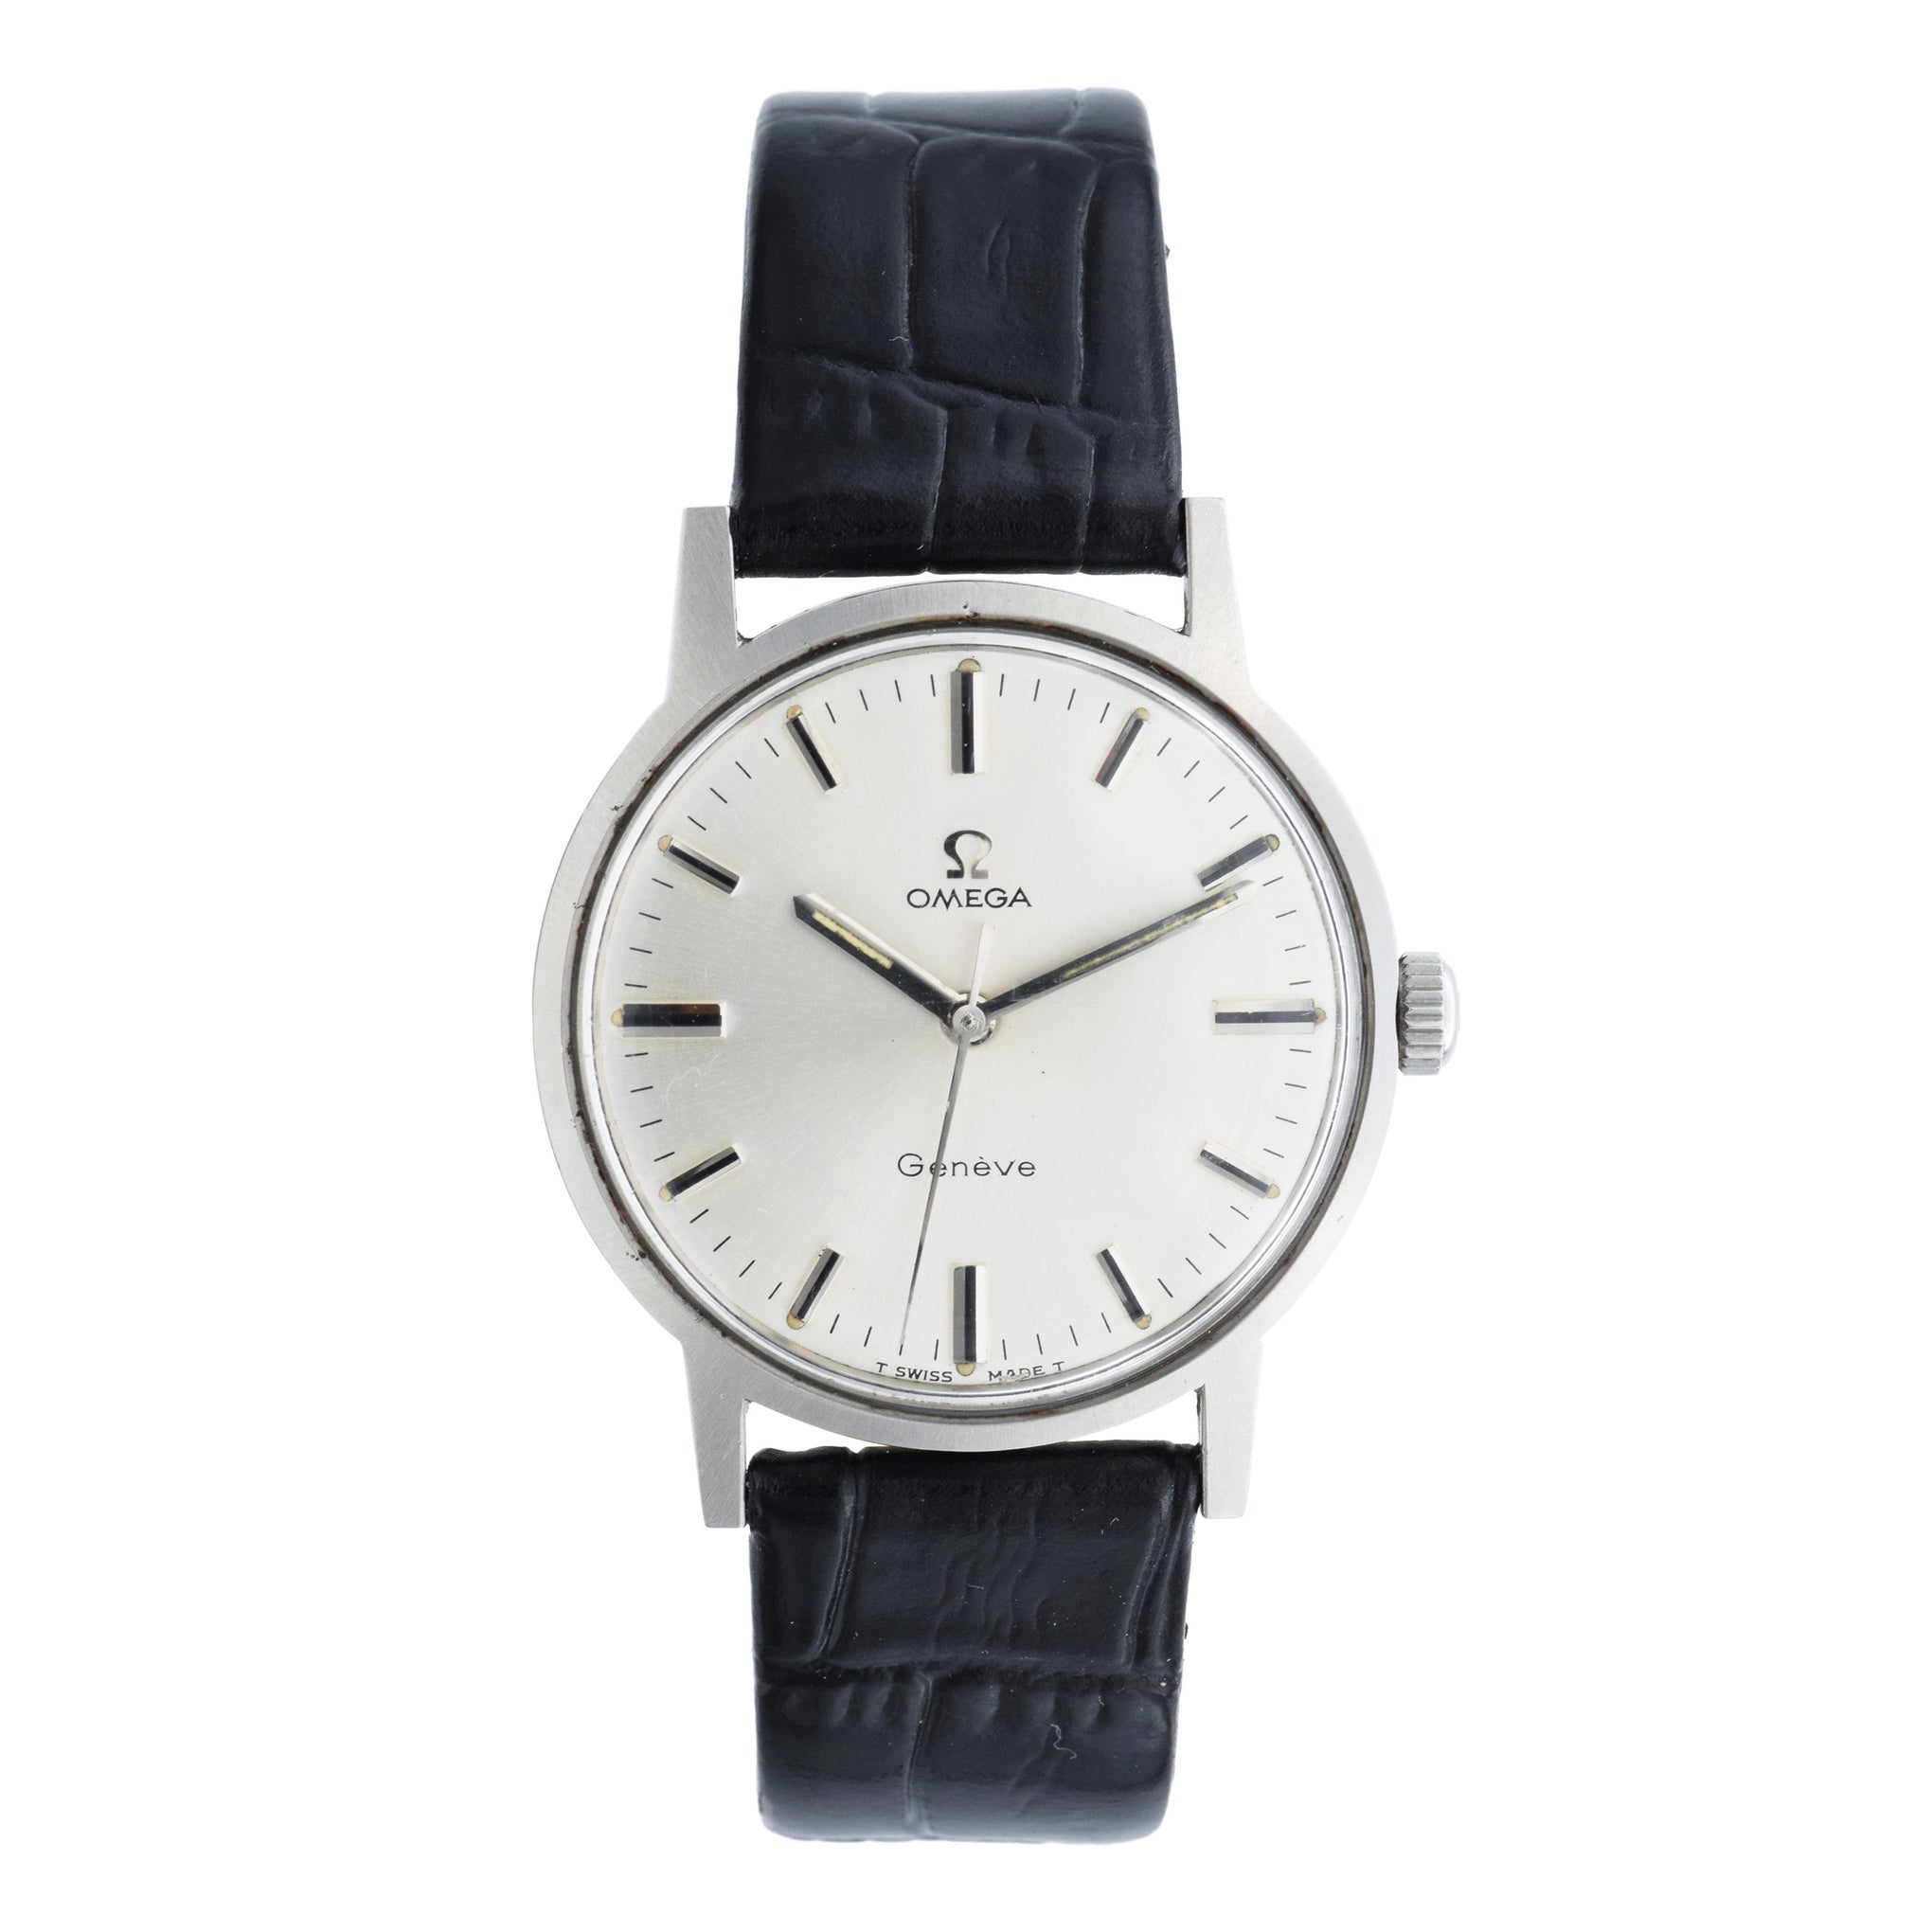 Vintage 1960s Omega Genève Watch